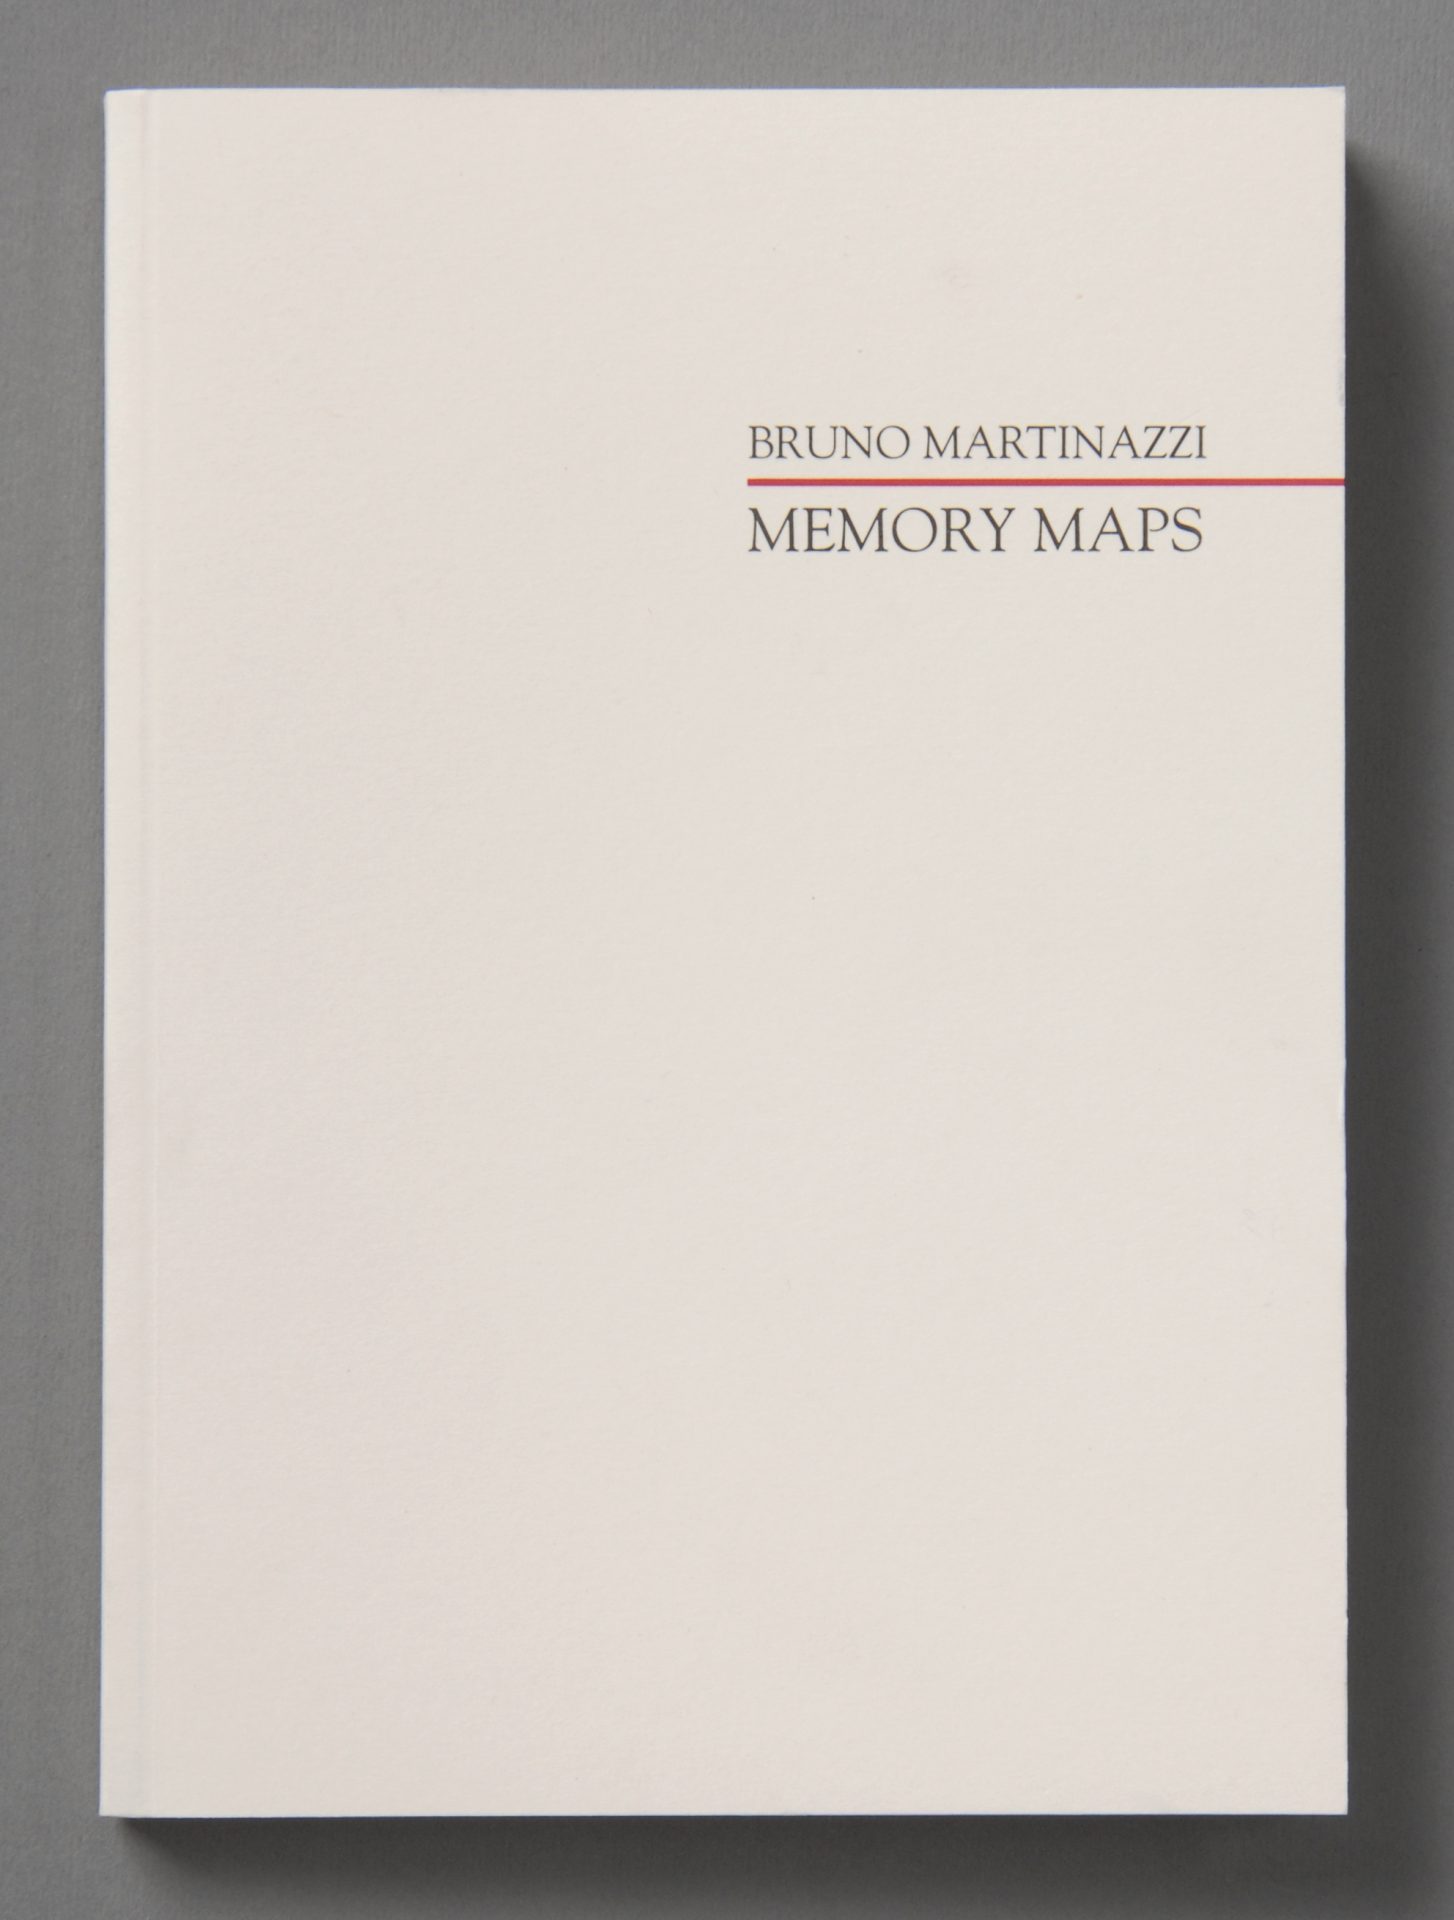 Auf cremefarbenem Papier, rechts oben Beschriftung in zwei Zeilen, durch einen roten Strich getrennt: oben, Bruno Martinazzi, unten, Memory Maps.